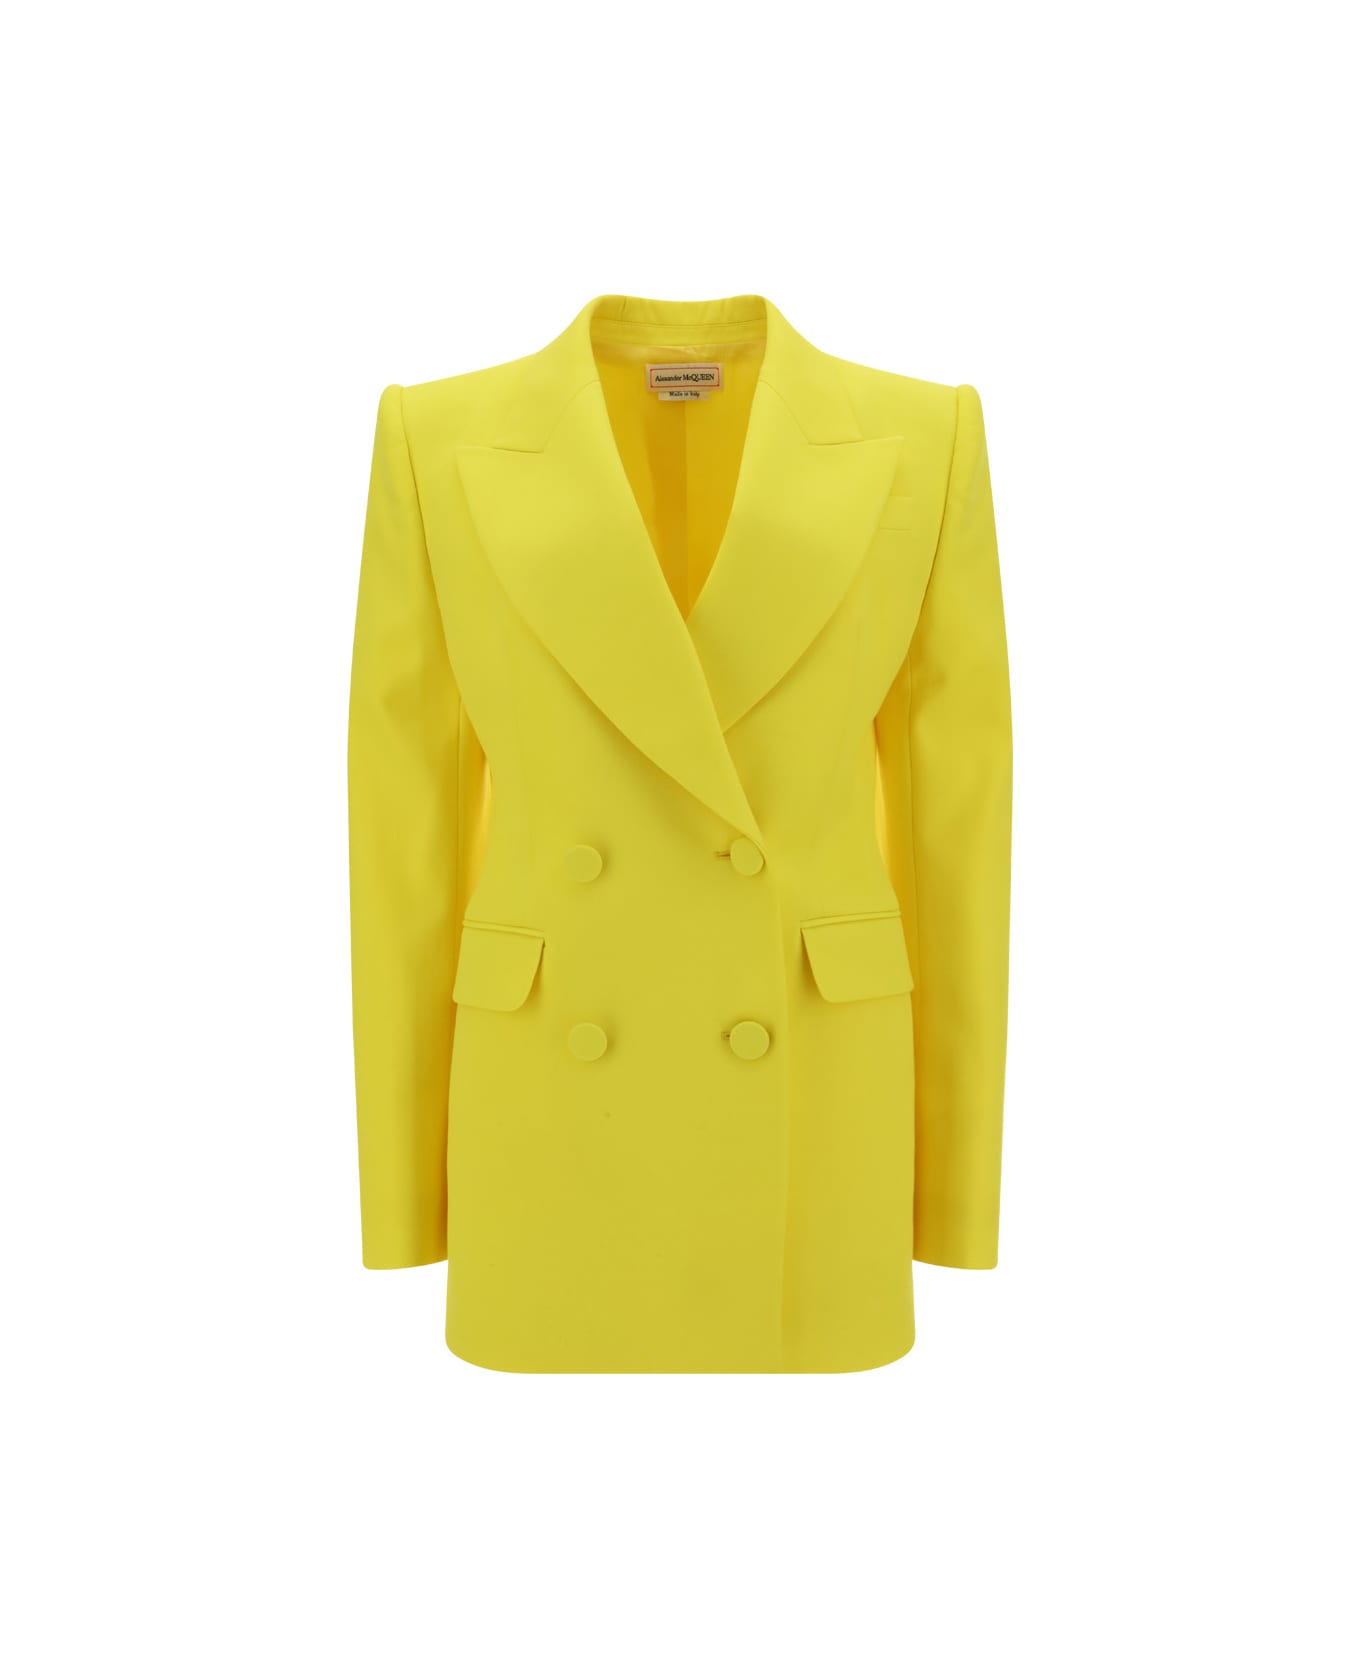 Alexander McQueen Blazer Jacket - Bright Yellow